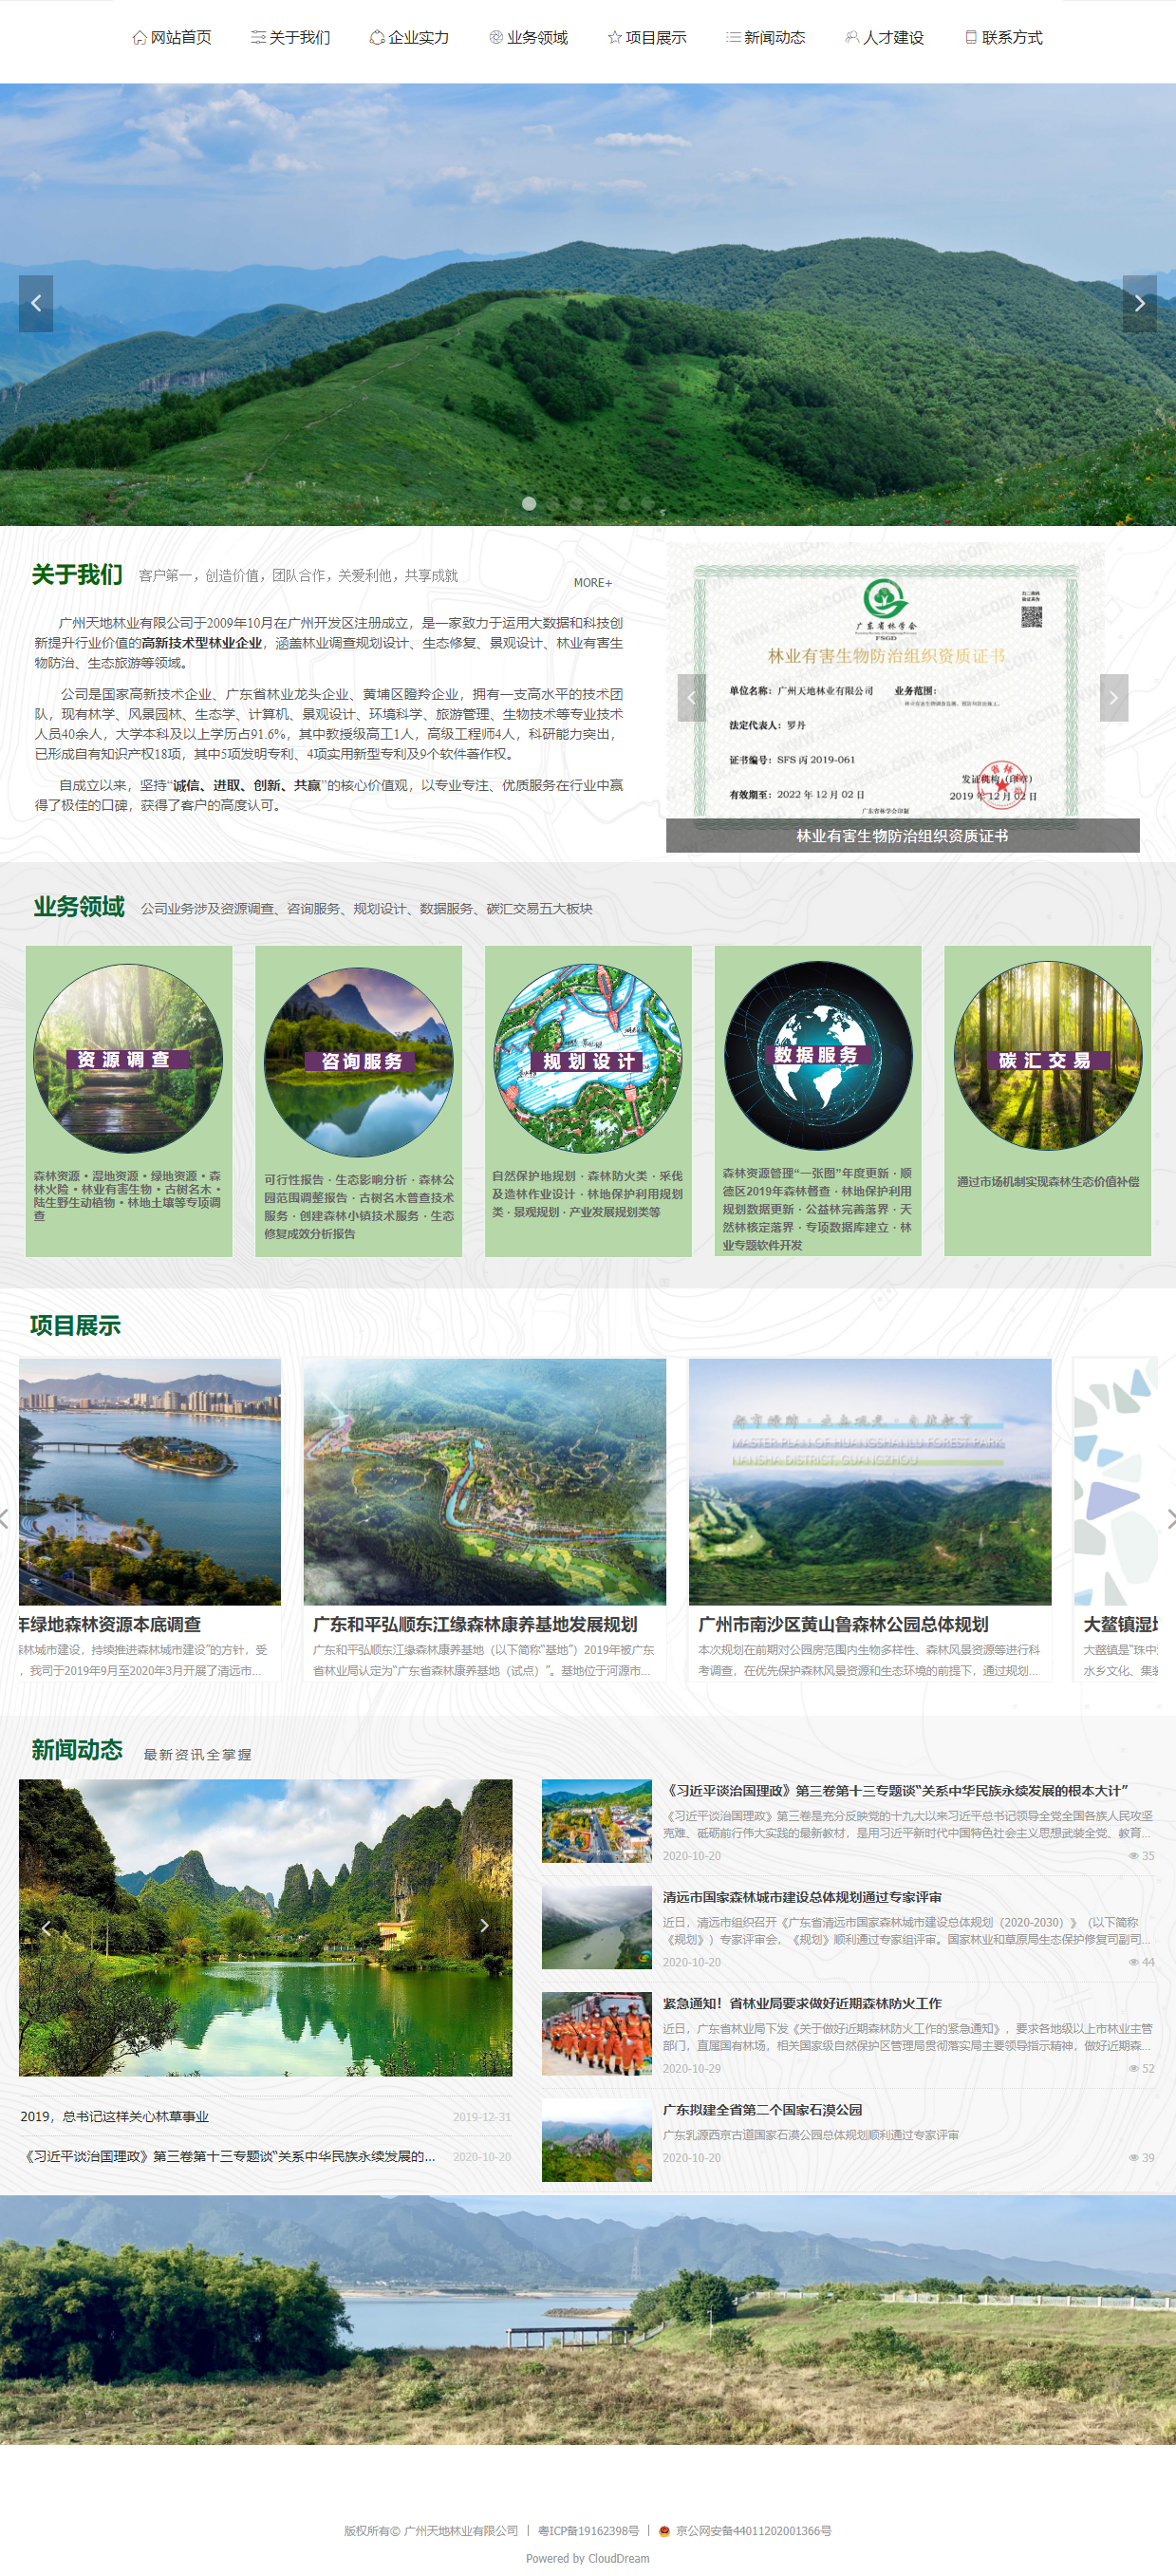 广州天地林业有限公司网站案例